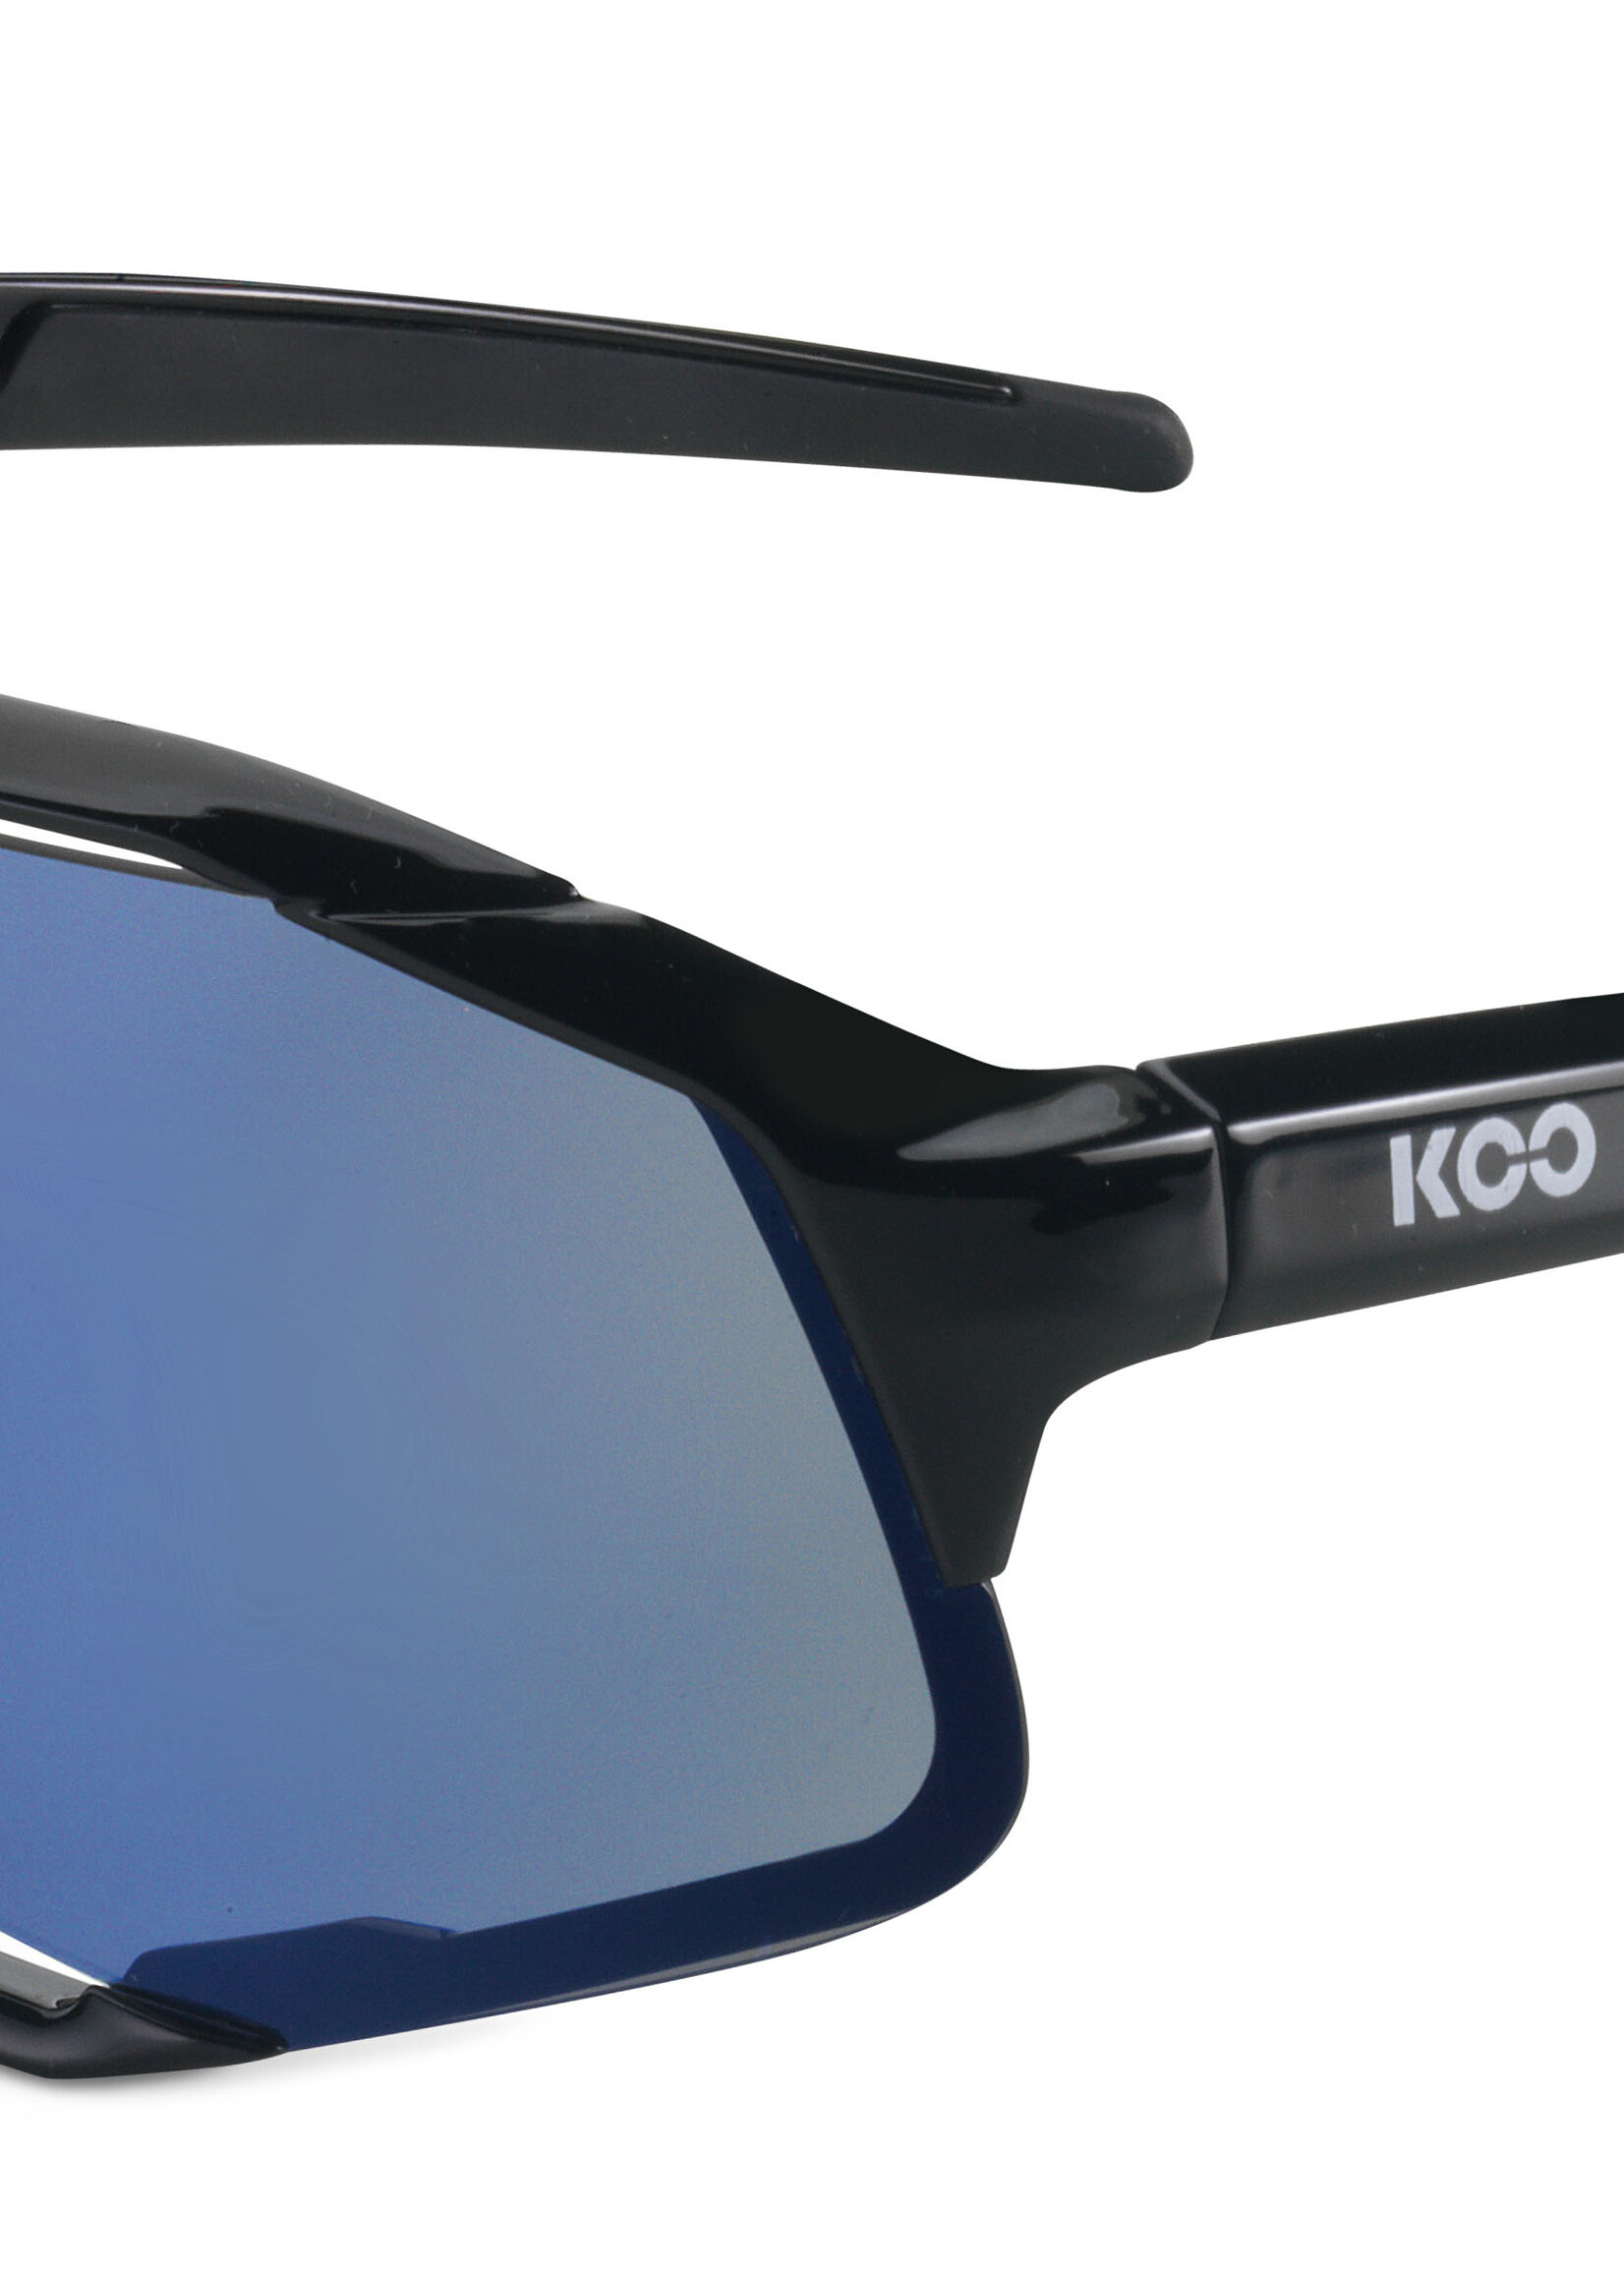 KOO Demos Sunglasses - Blue / Turquoise